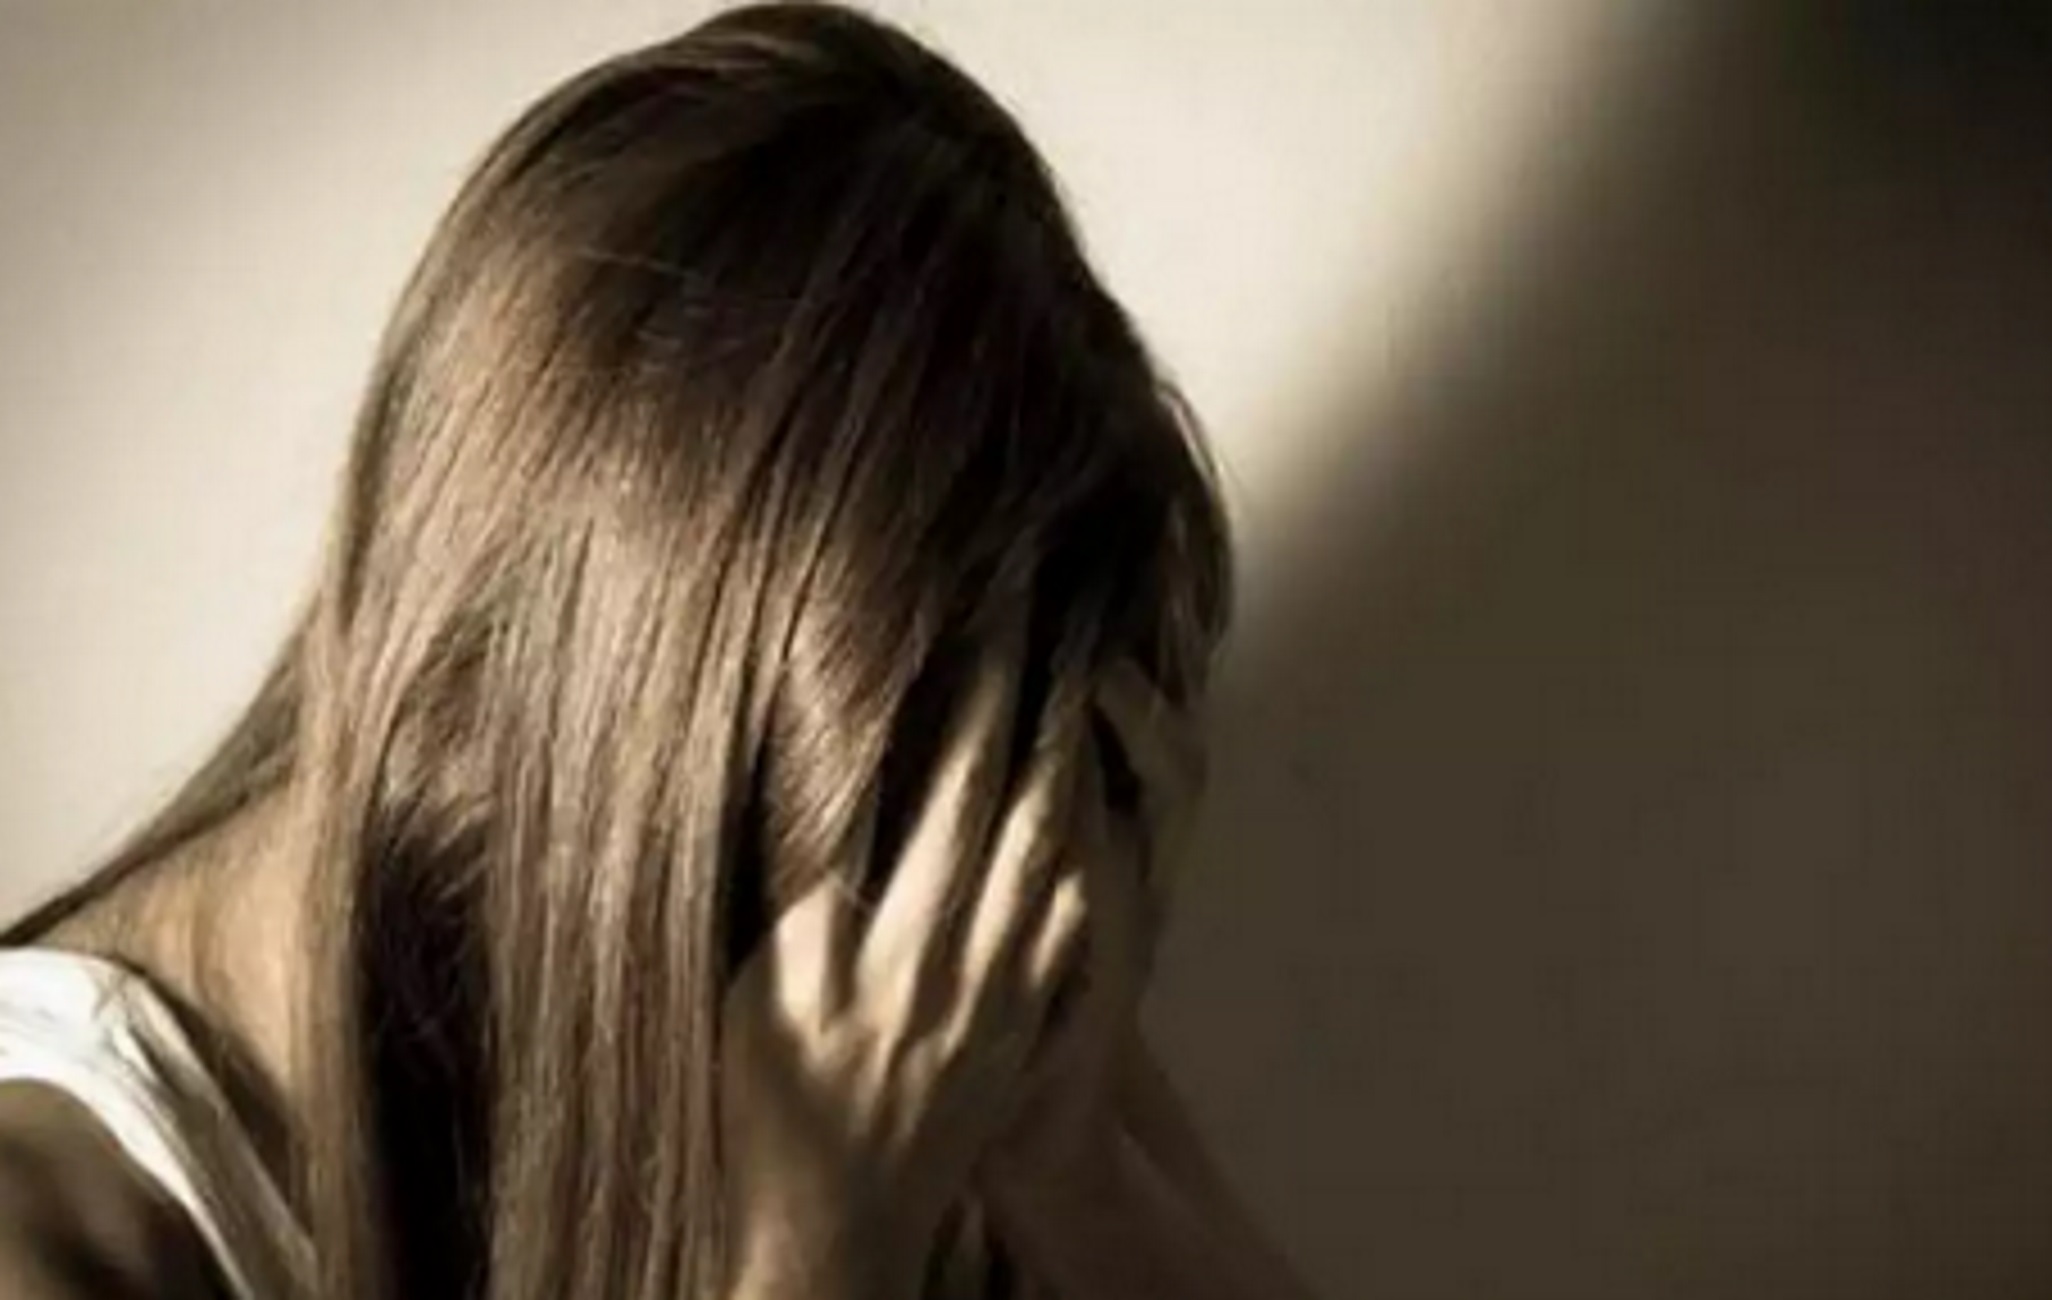 Θεσσαλονίκη: Ποινική δίωξη στον Αλγερινό για βιασμό και διακίνηση ναρκωτικών μετά την καταγγελία της 24χρονης